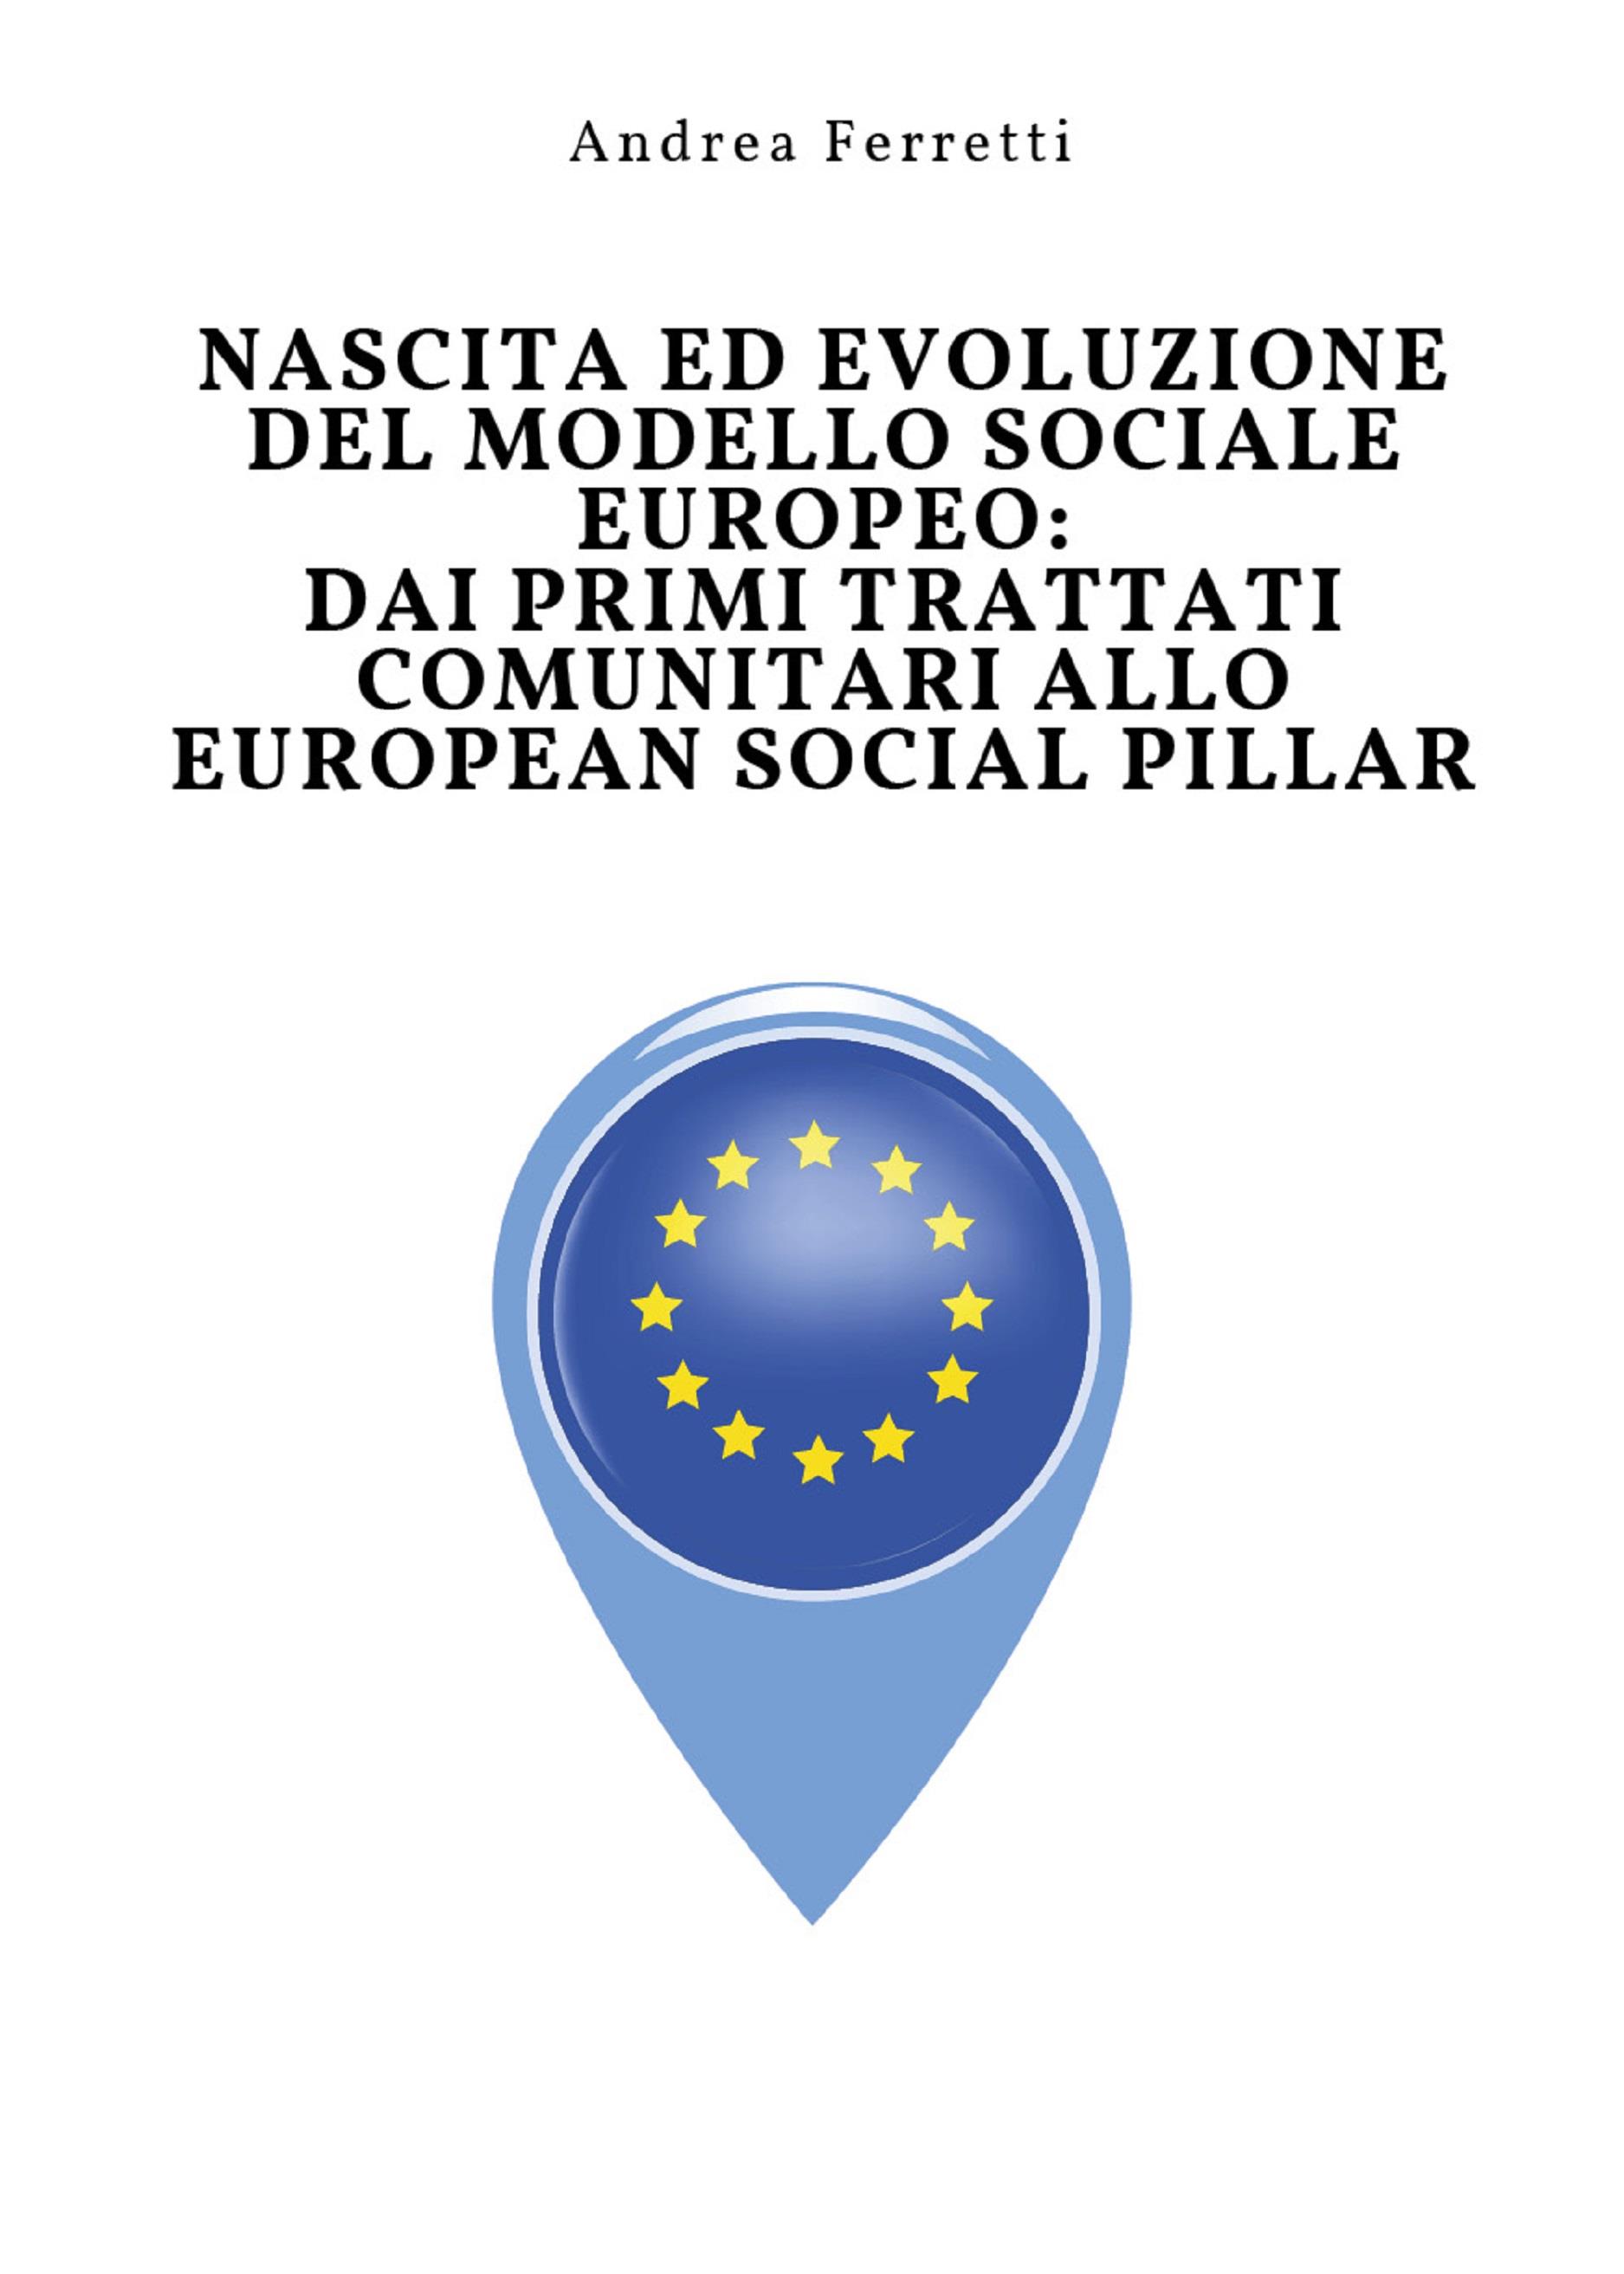 Nascita ed evoluzione del modello sociale europeo: dai primi trattati comunitari allo European Social Pillar